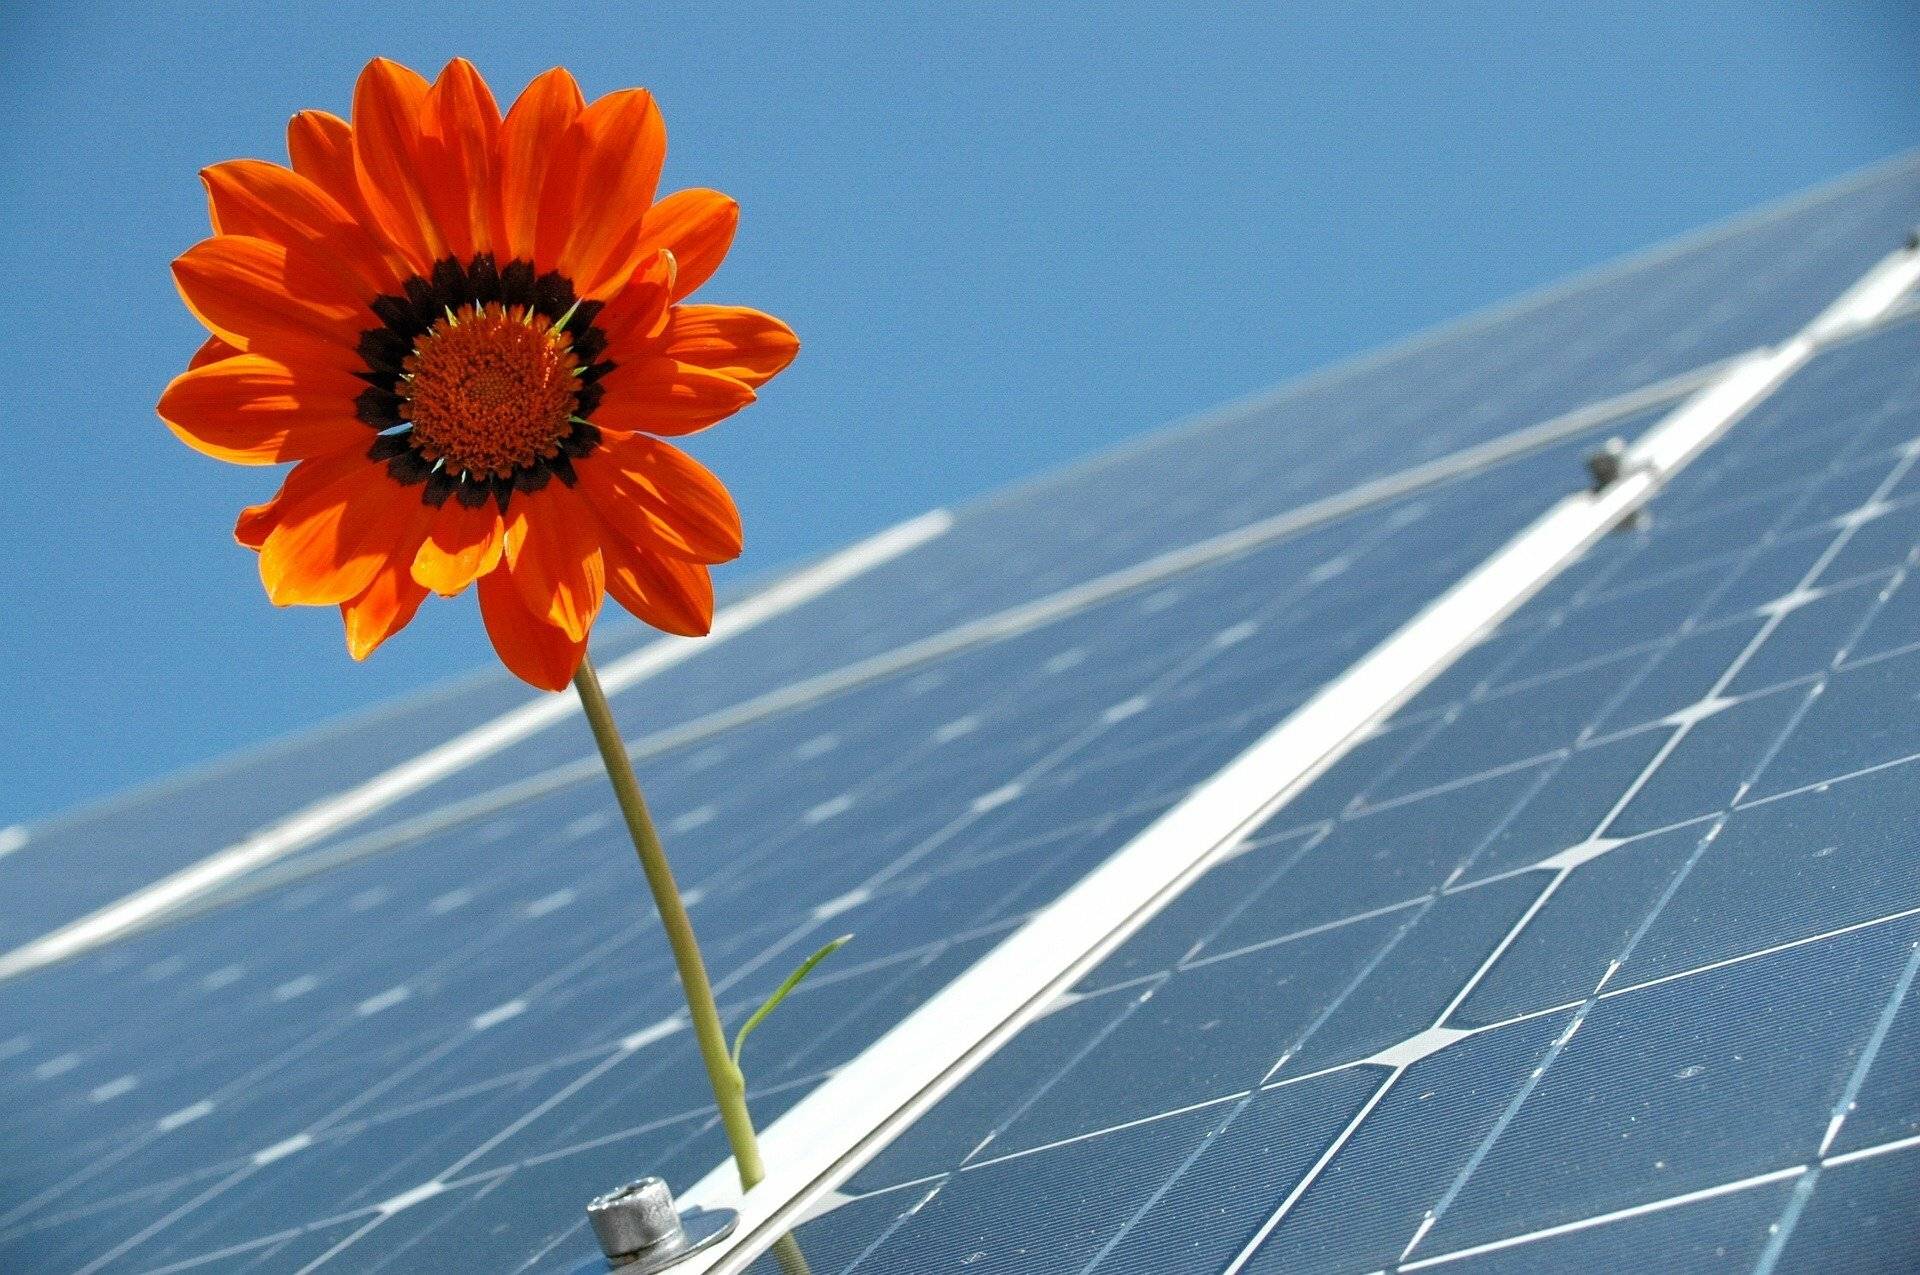 Solarinitiative lädt zu nächsten öffentlichen Treffen ein